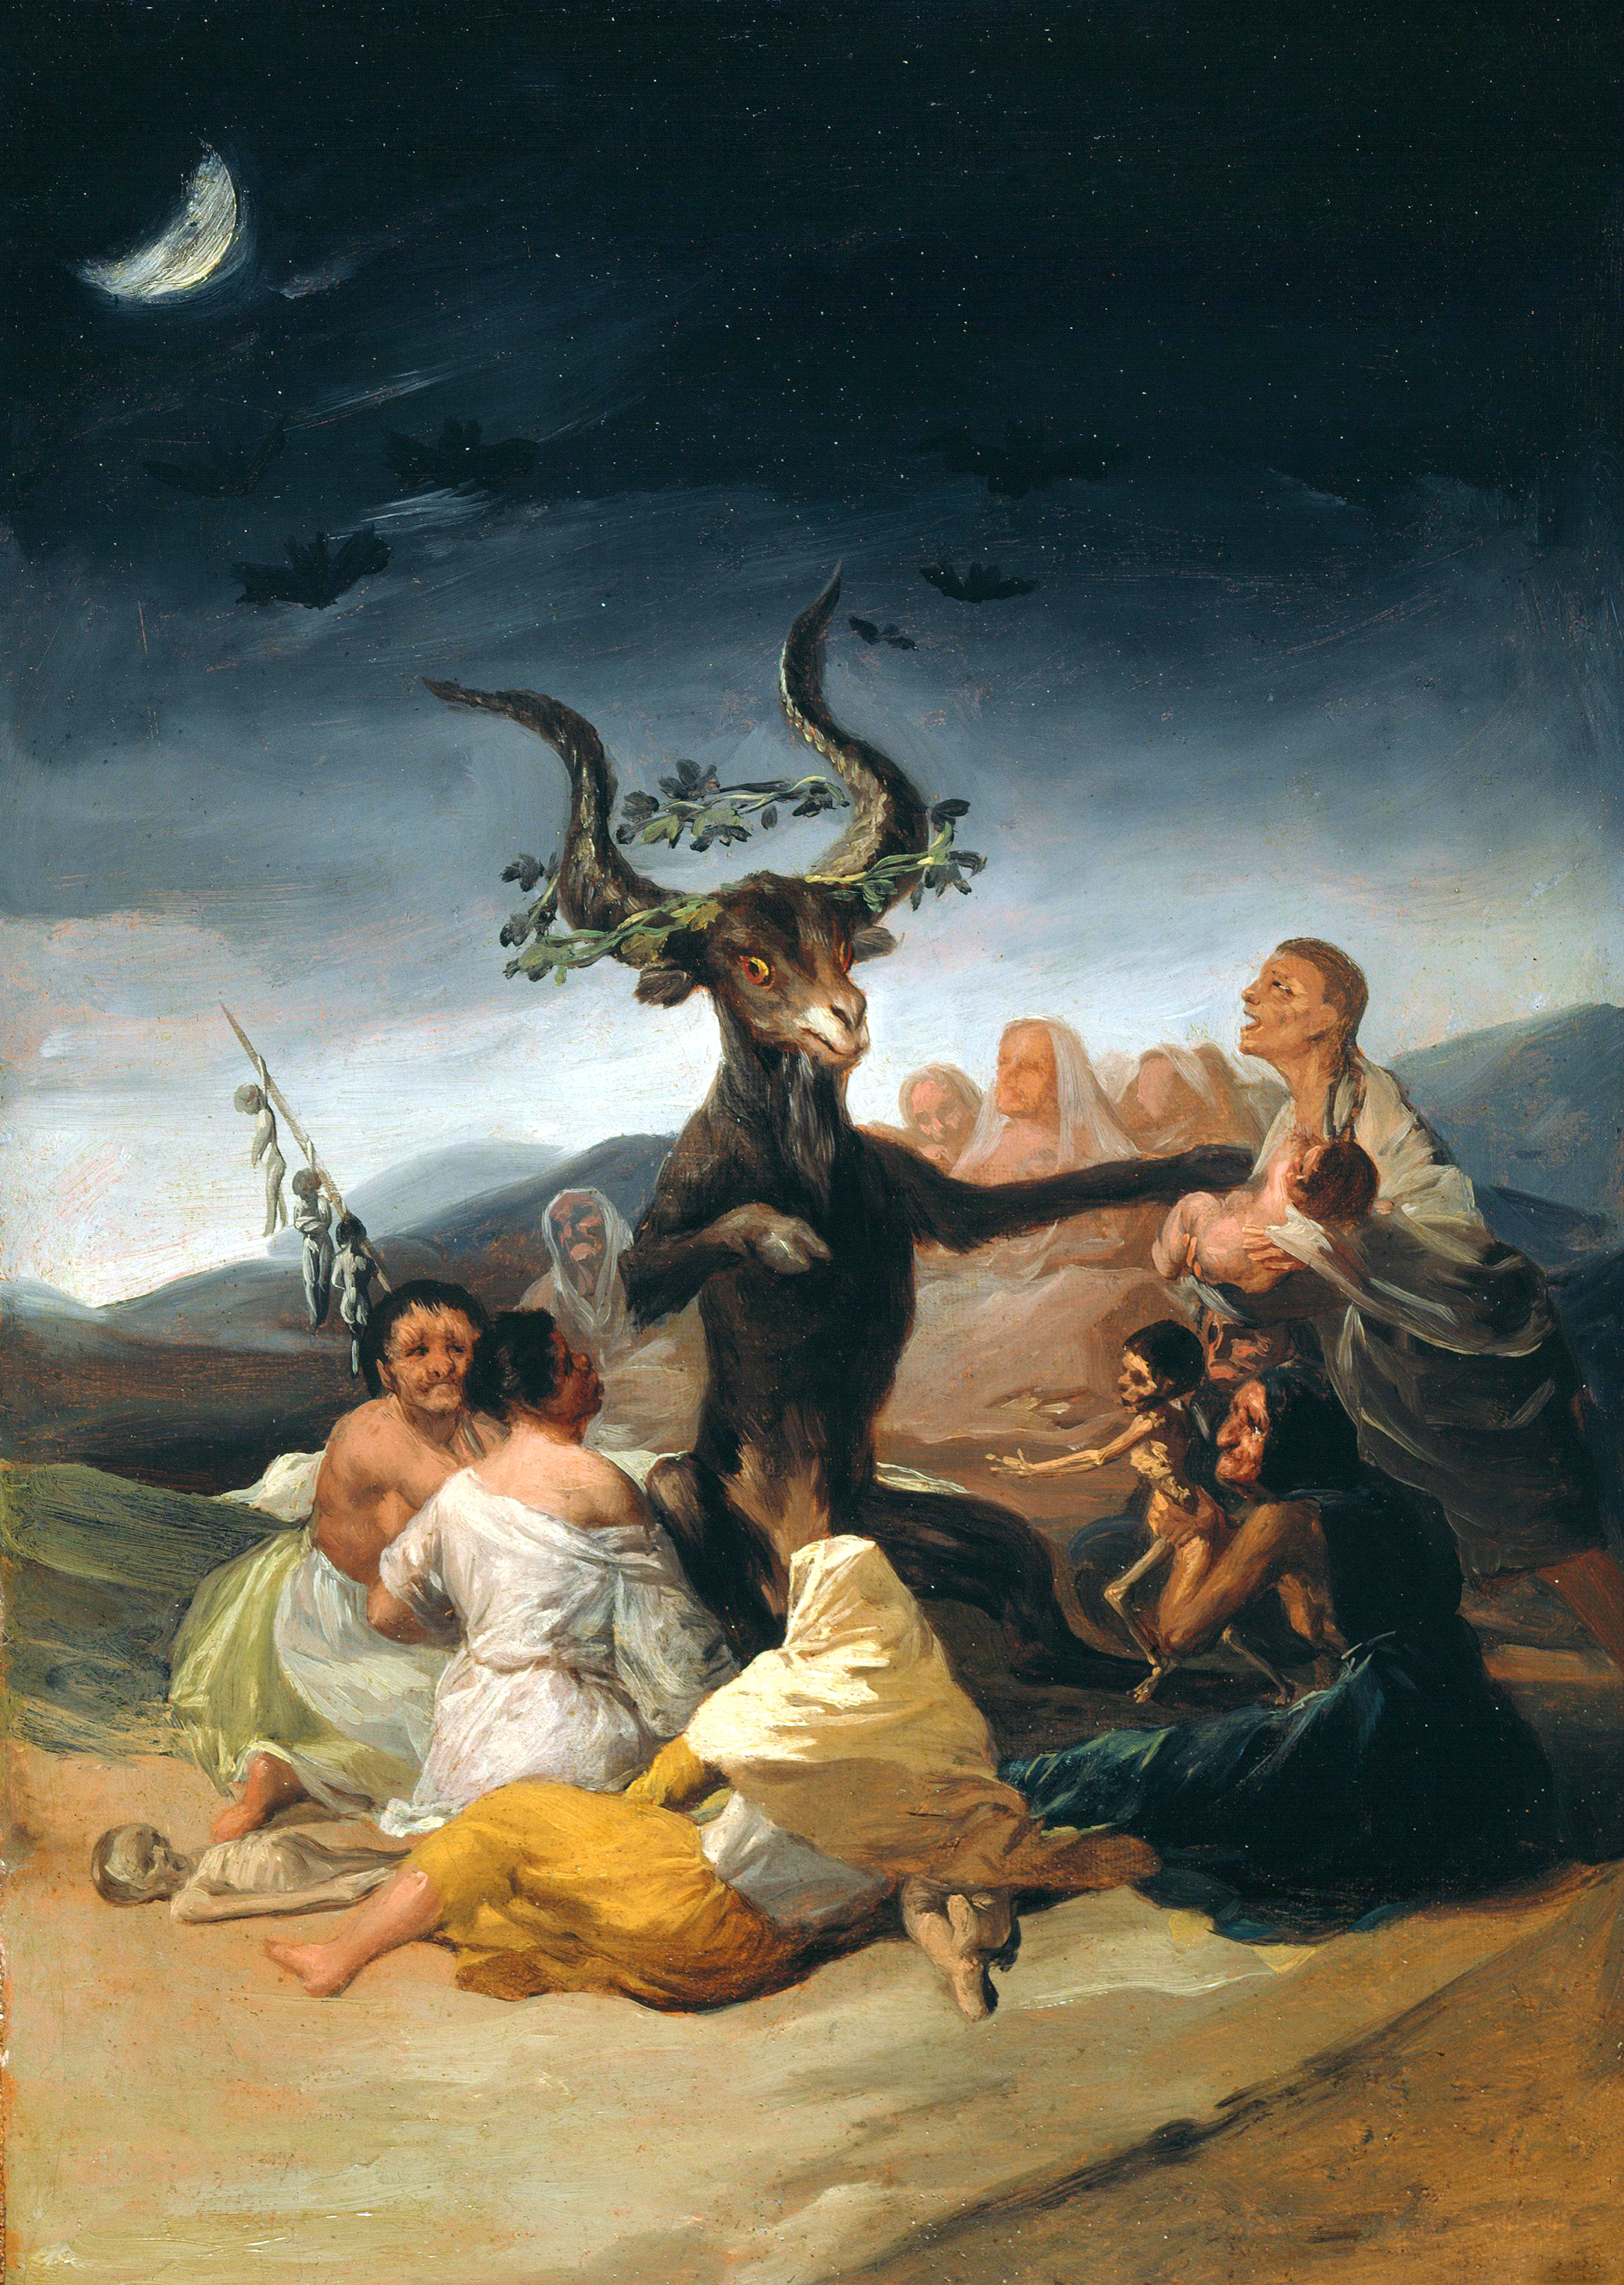 Шабаш ведьм by Francisco Goya - 1797 - 1798 - 30 x 43 cm 